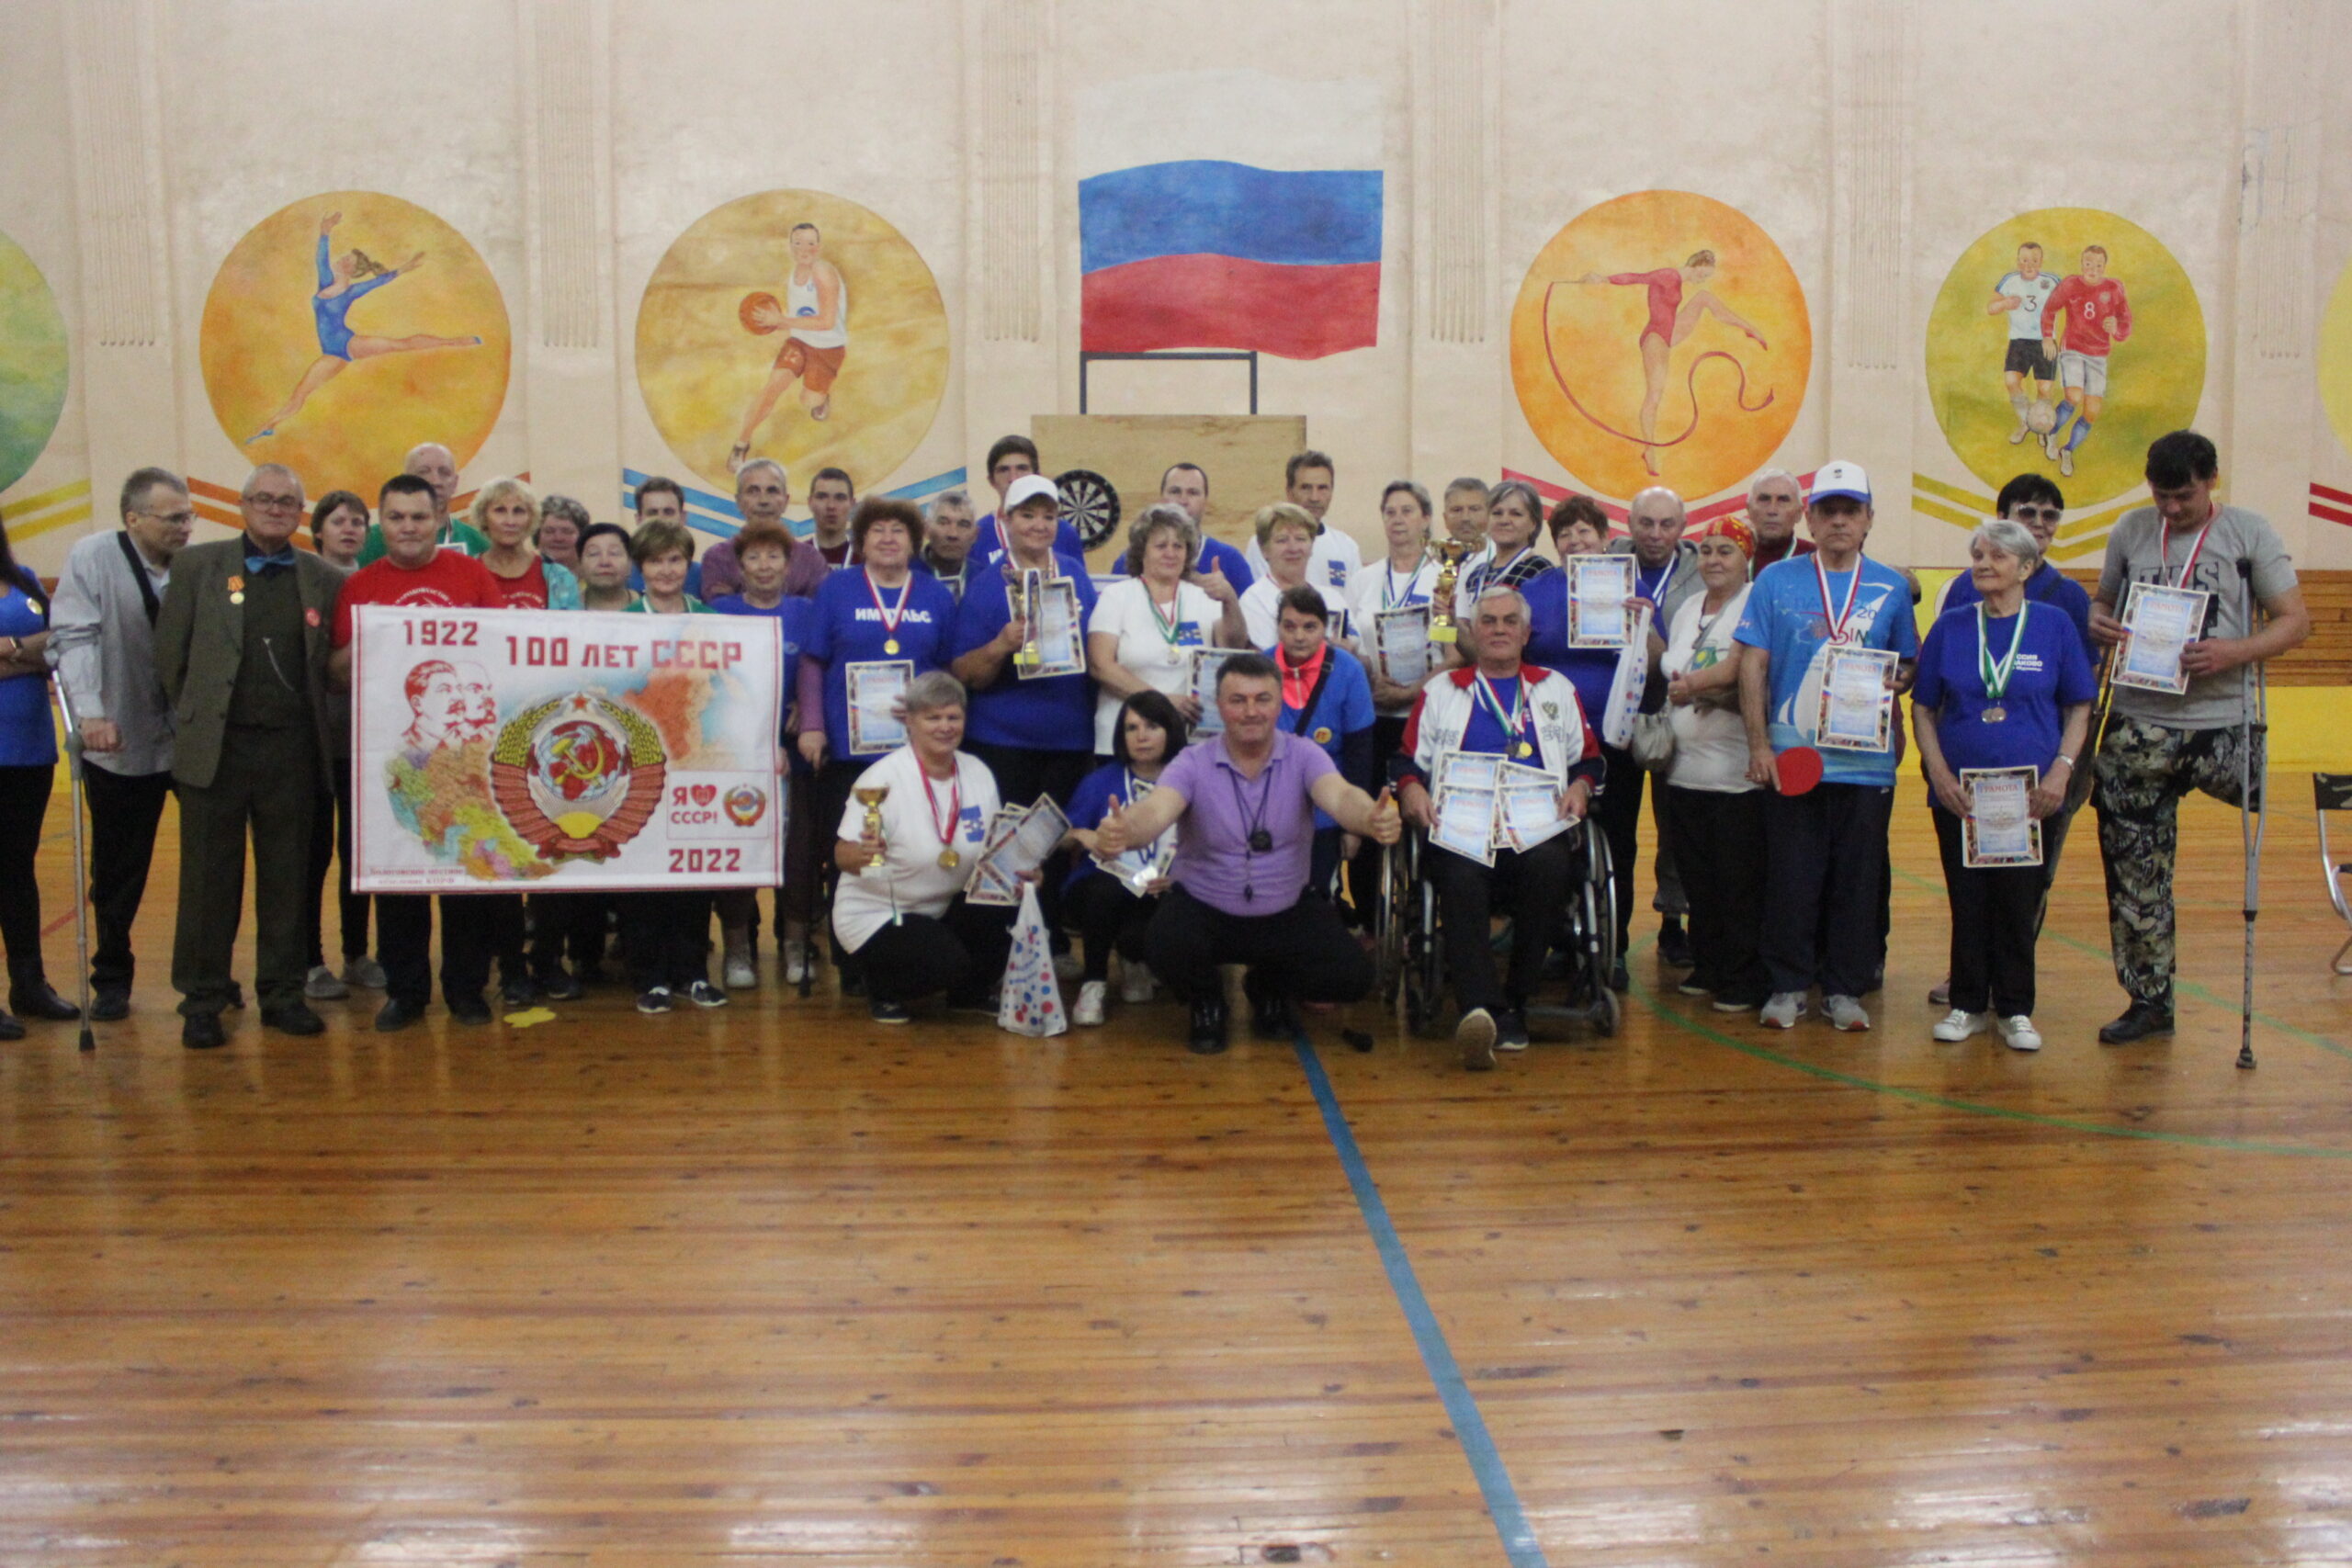 В Бологое при поддержке КПРФ прошёл спортивный праздник в честь 100-летия образования СССР